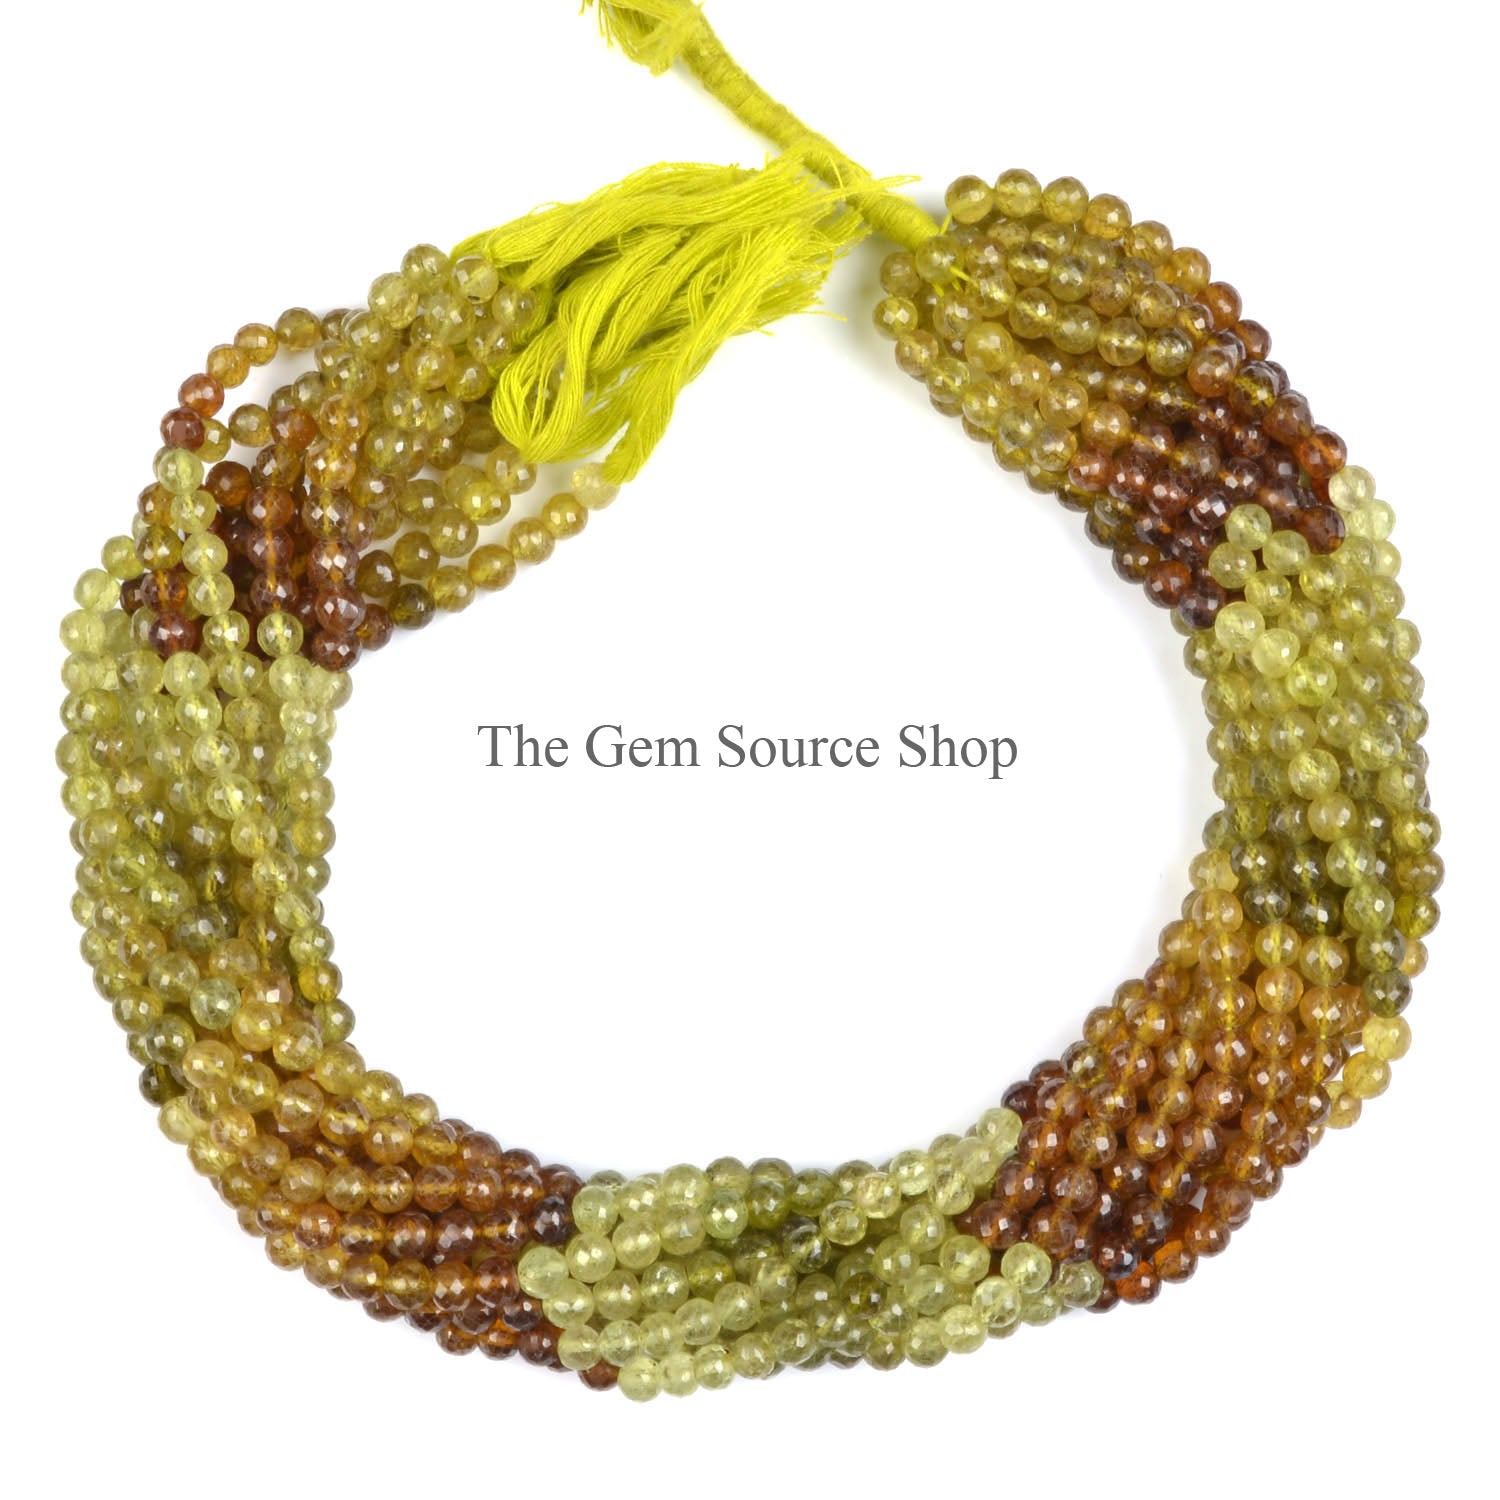 Grossular Garnet Faceted Round Gemstone Beads